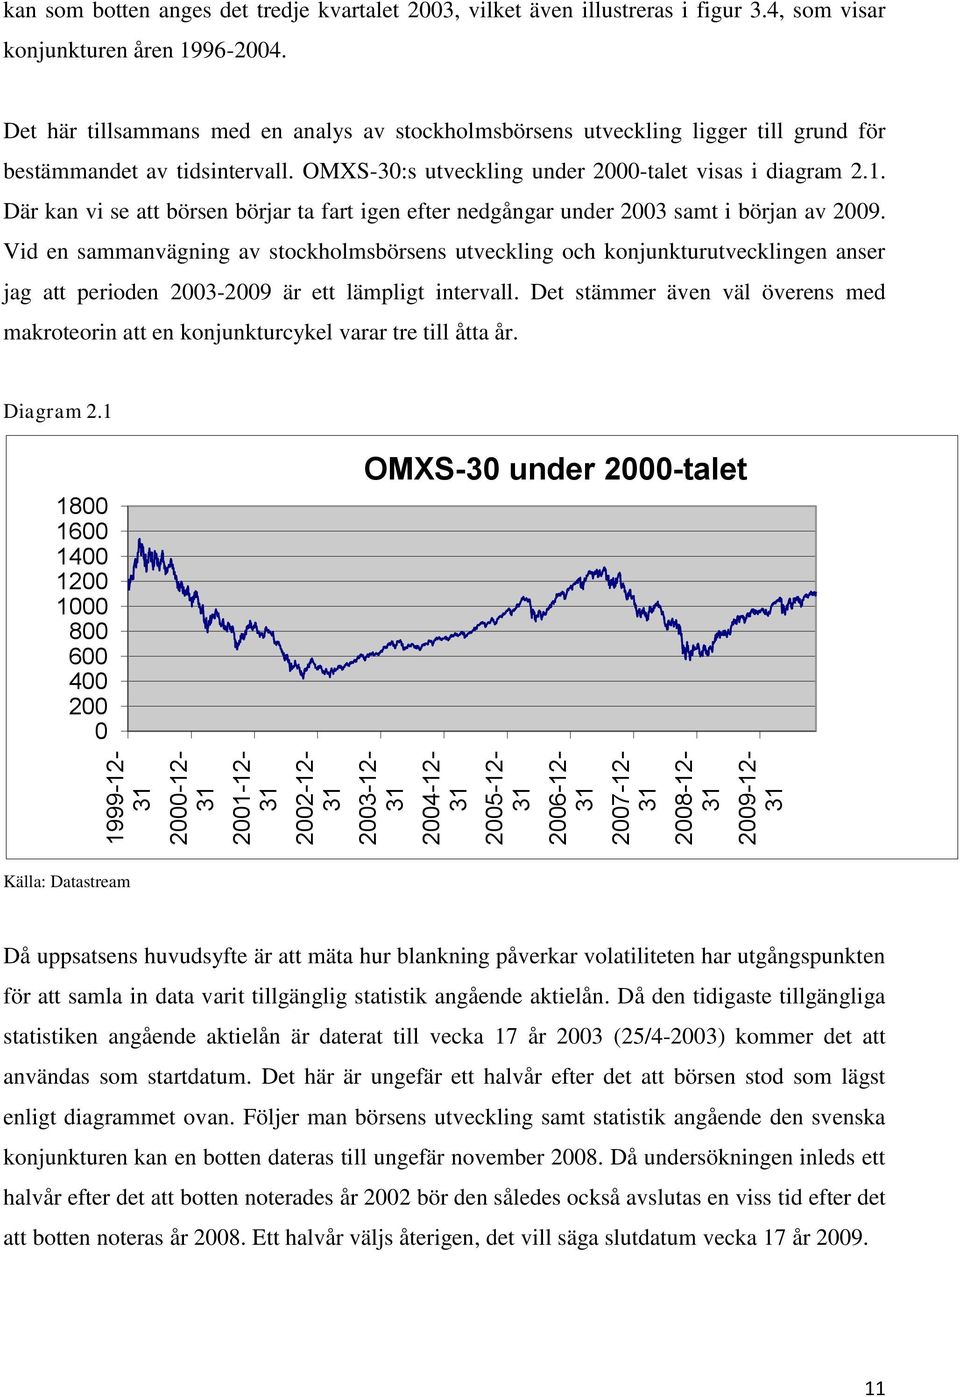 OMXS-30:s utveckling under 2000-talet visas i diagram 2.1. Där kan vi se att börsen börjar ta fart igen efter nedgångar under 2003 samt i början av 2009.